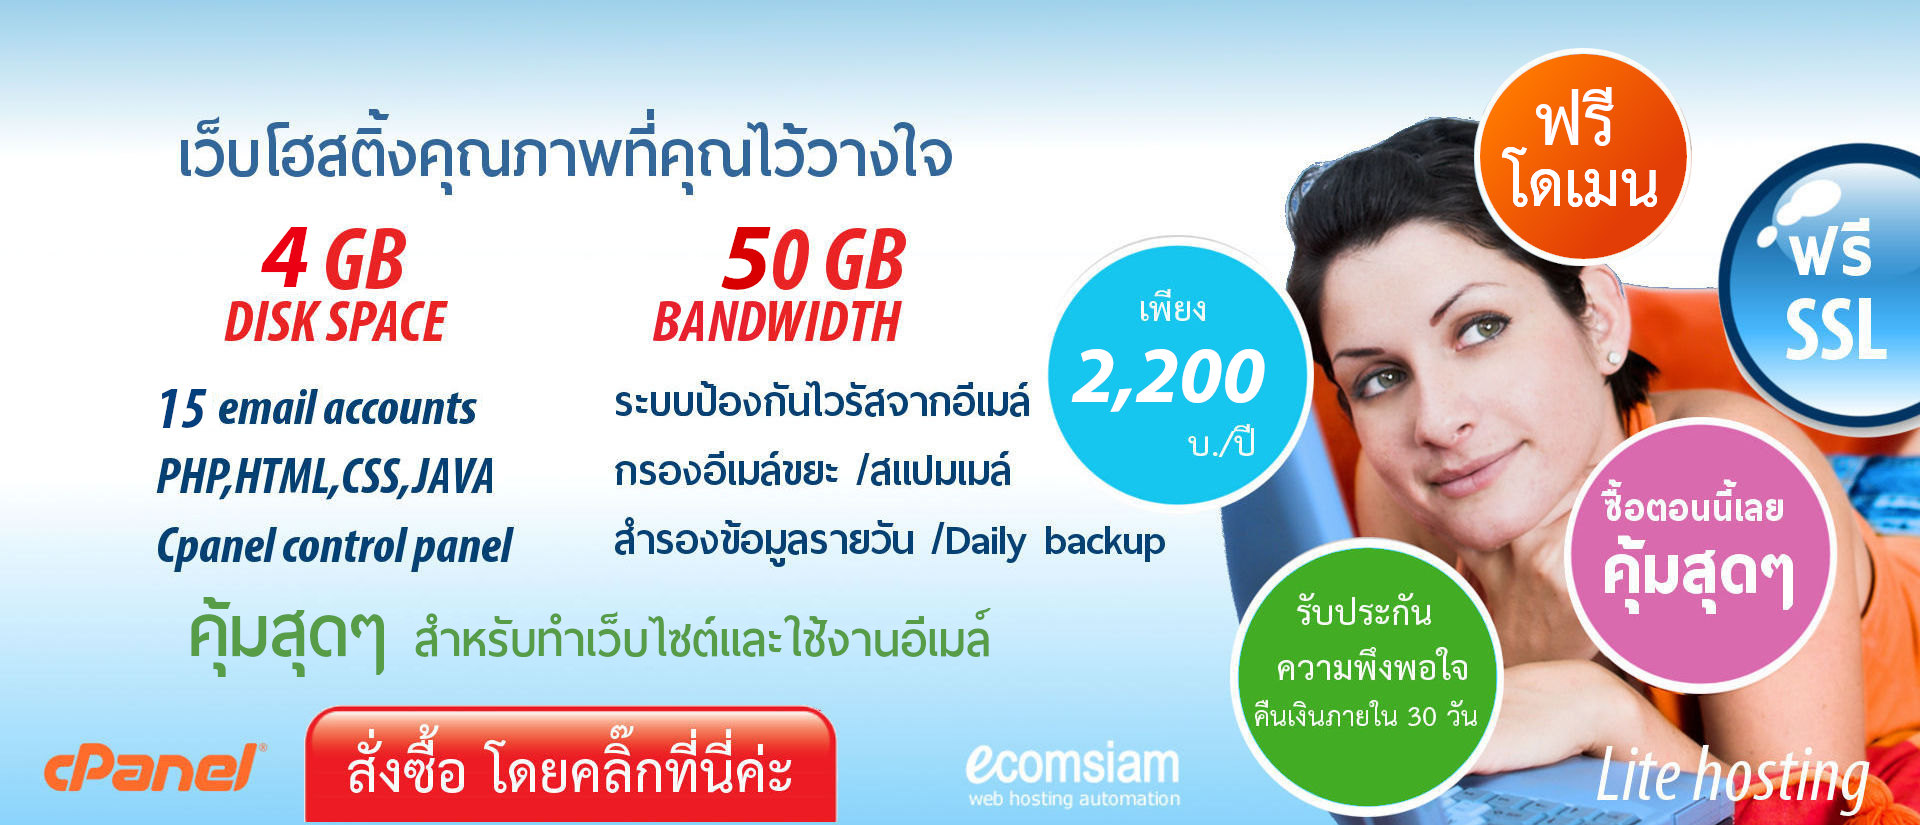 ฟรีโดเมน สำหรับ web hosting thailand -liteplan เว็บโฮสติ้งไทย ราคาเบาๆ ฟรี SSL เพียง 2.200 บาทต่อปี